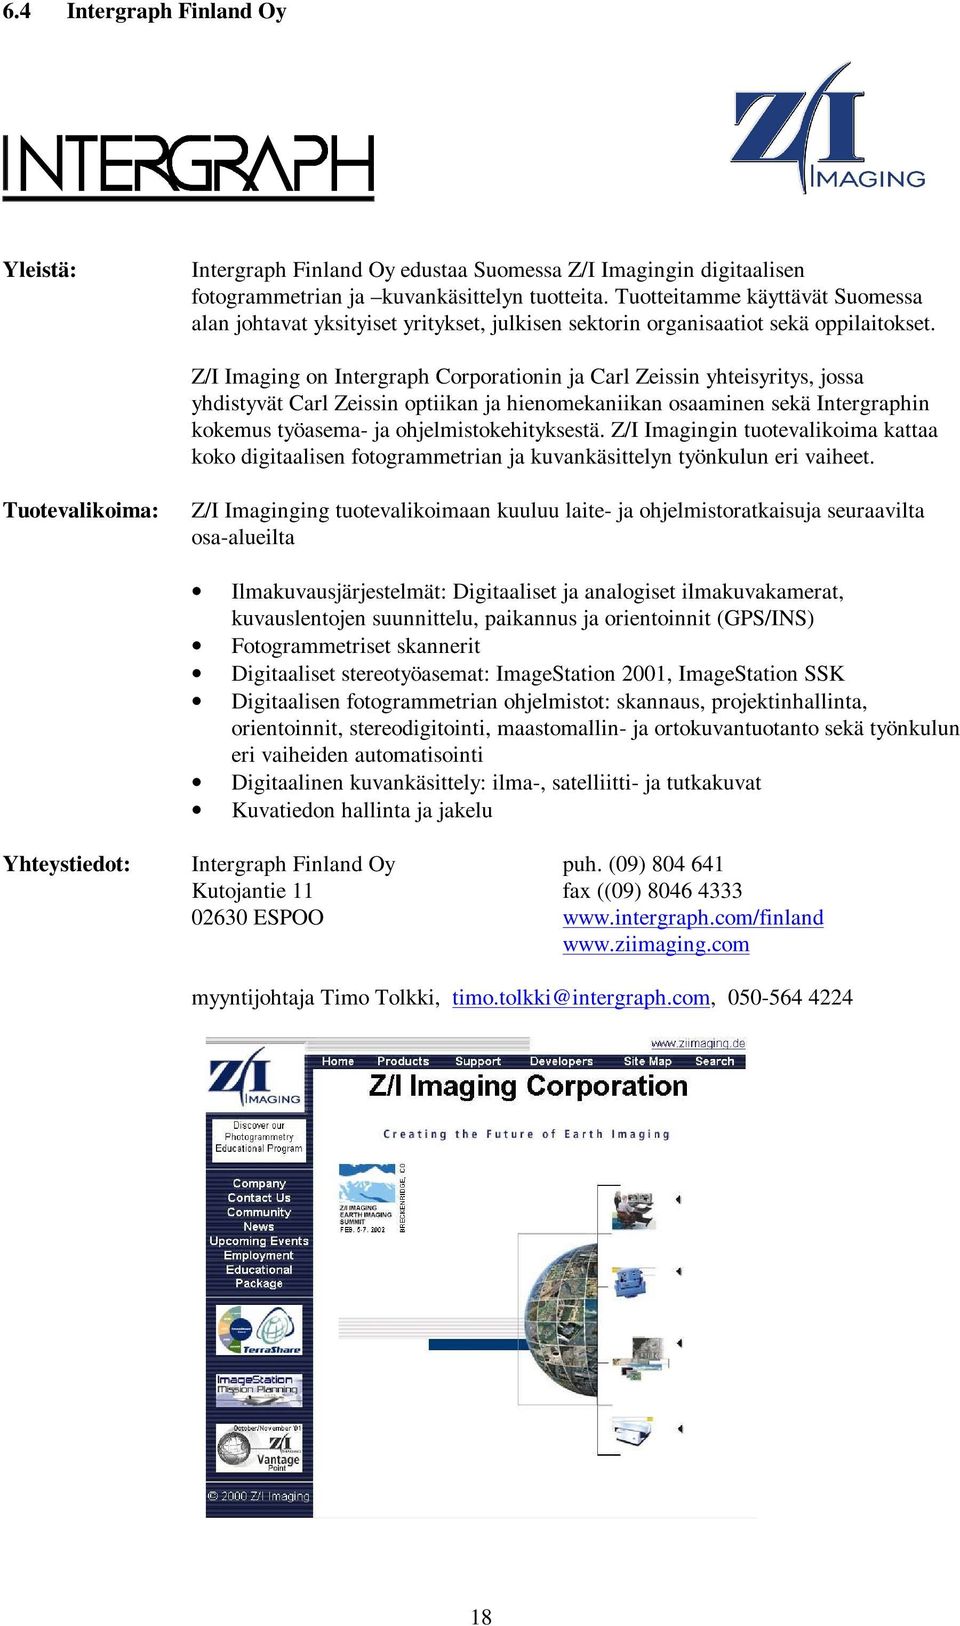 Z/I Imaging on Intergraph Corporationin ja Carl Zeissin yhteisyritys, jossa yhdistyvät Carl Zeissin optiikan ja hienomekaniikan osaaminen sekä Intergraphin kokemus työasema- ja ohjelmistokehityksestä.